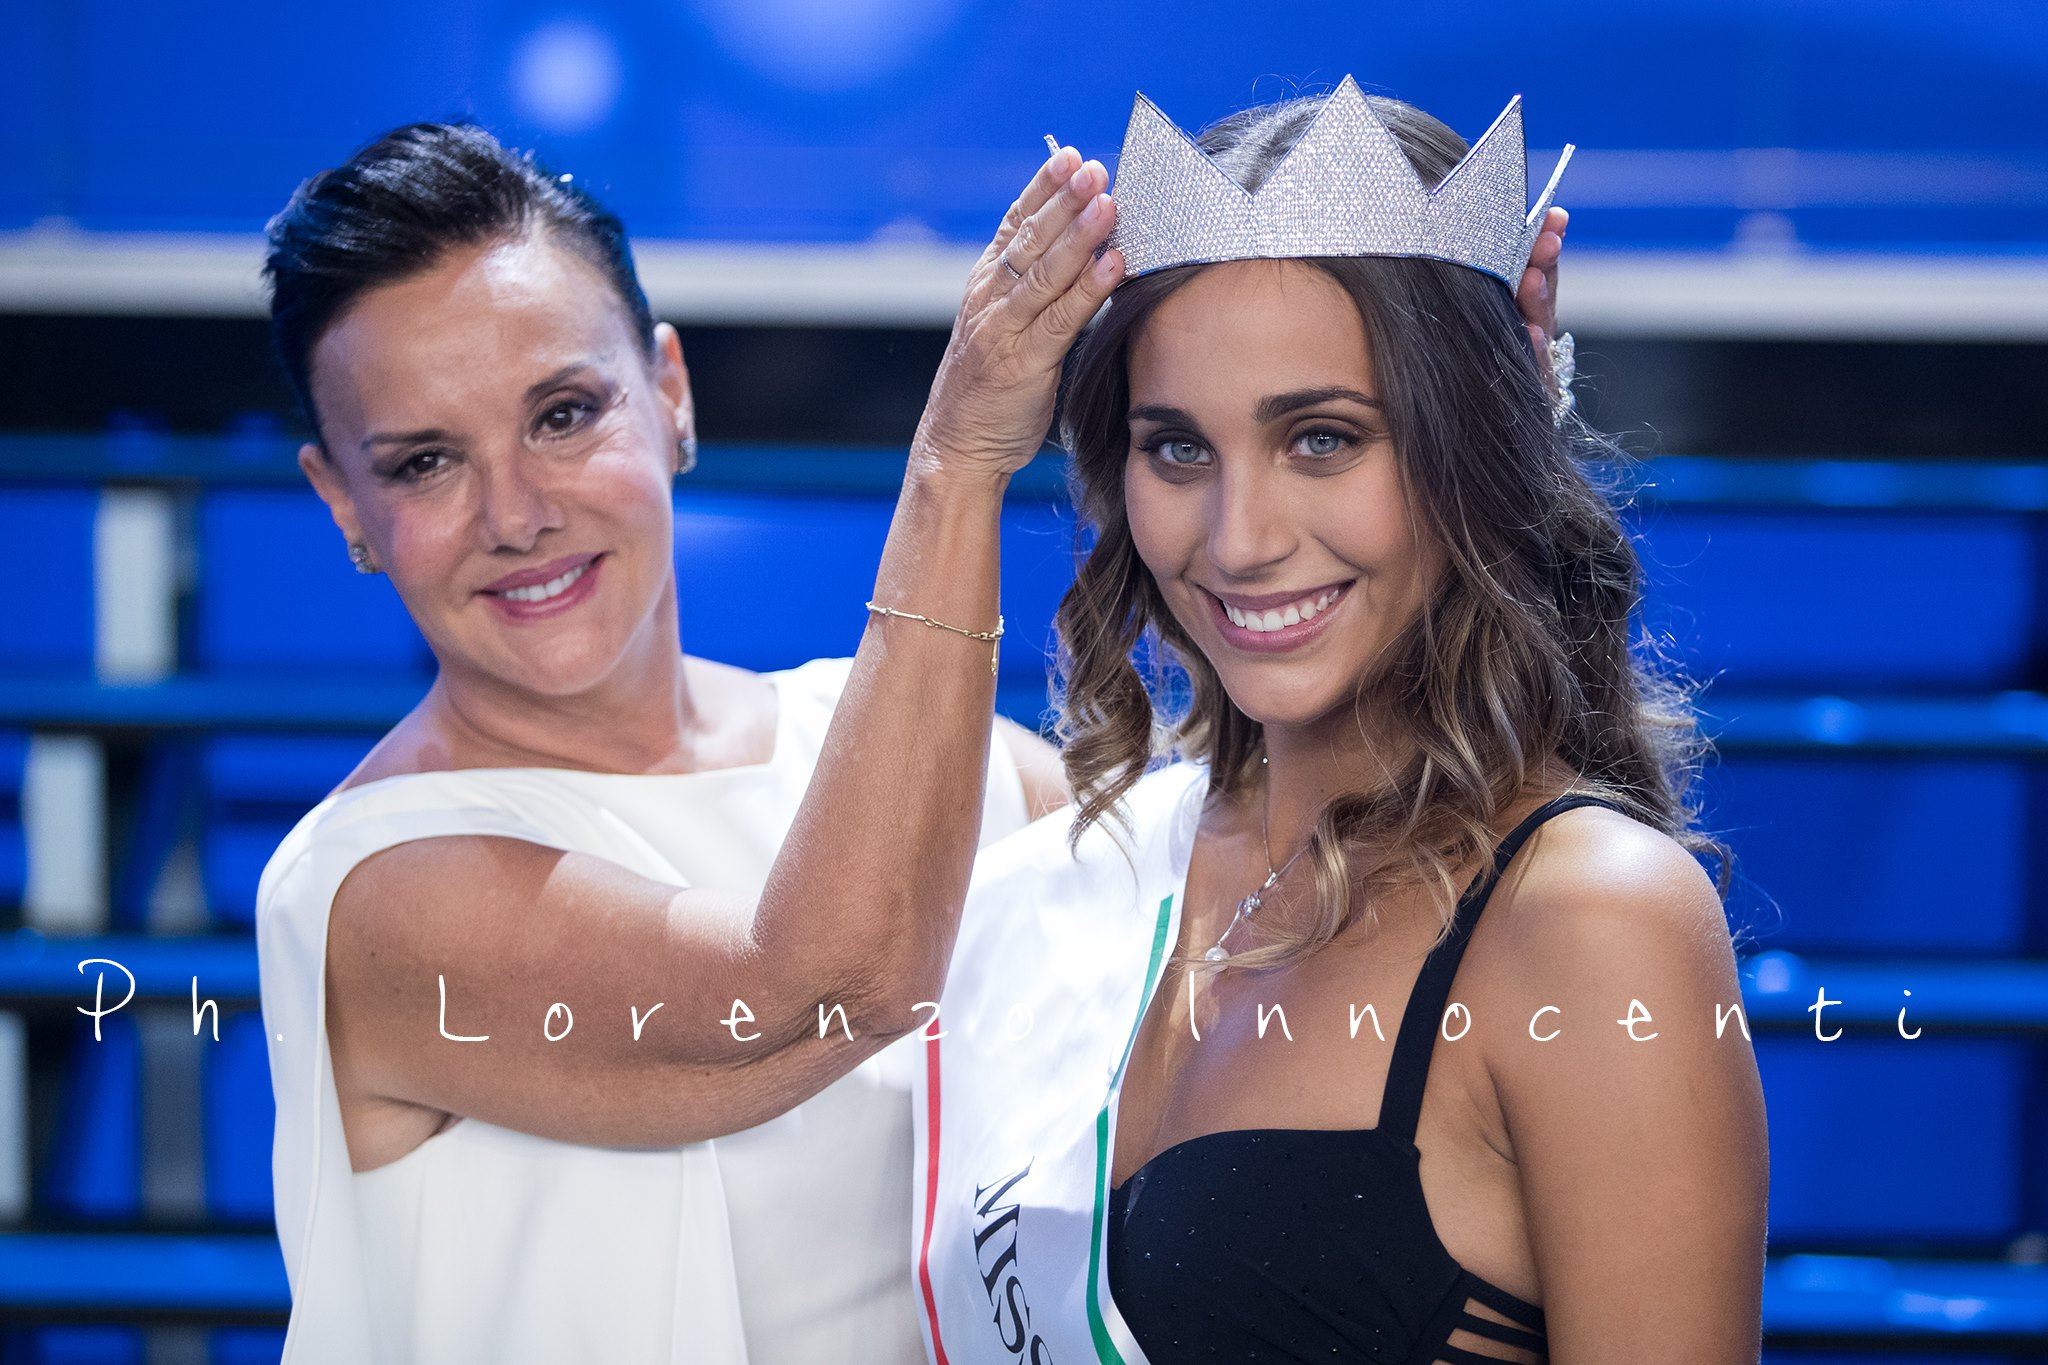 Miss Italia: la regina di bellezza è Rachele Risaliti